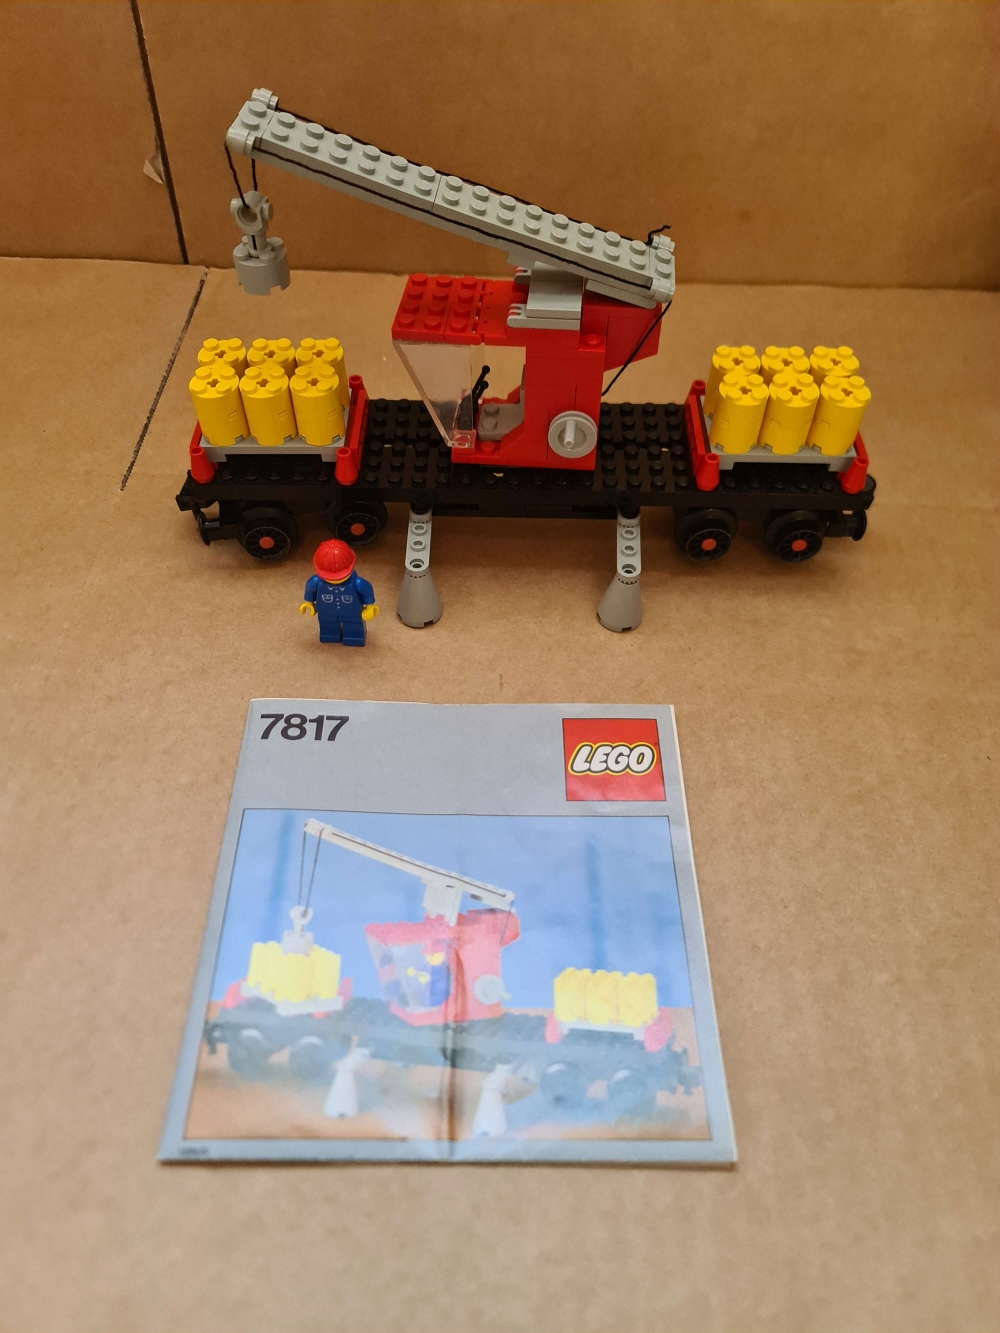 Sett 7817 fra Lego Train : 4.5V serien.
Nydelig sett.
Komplett med manual.